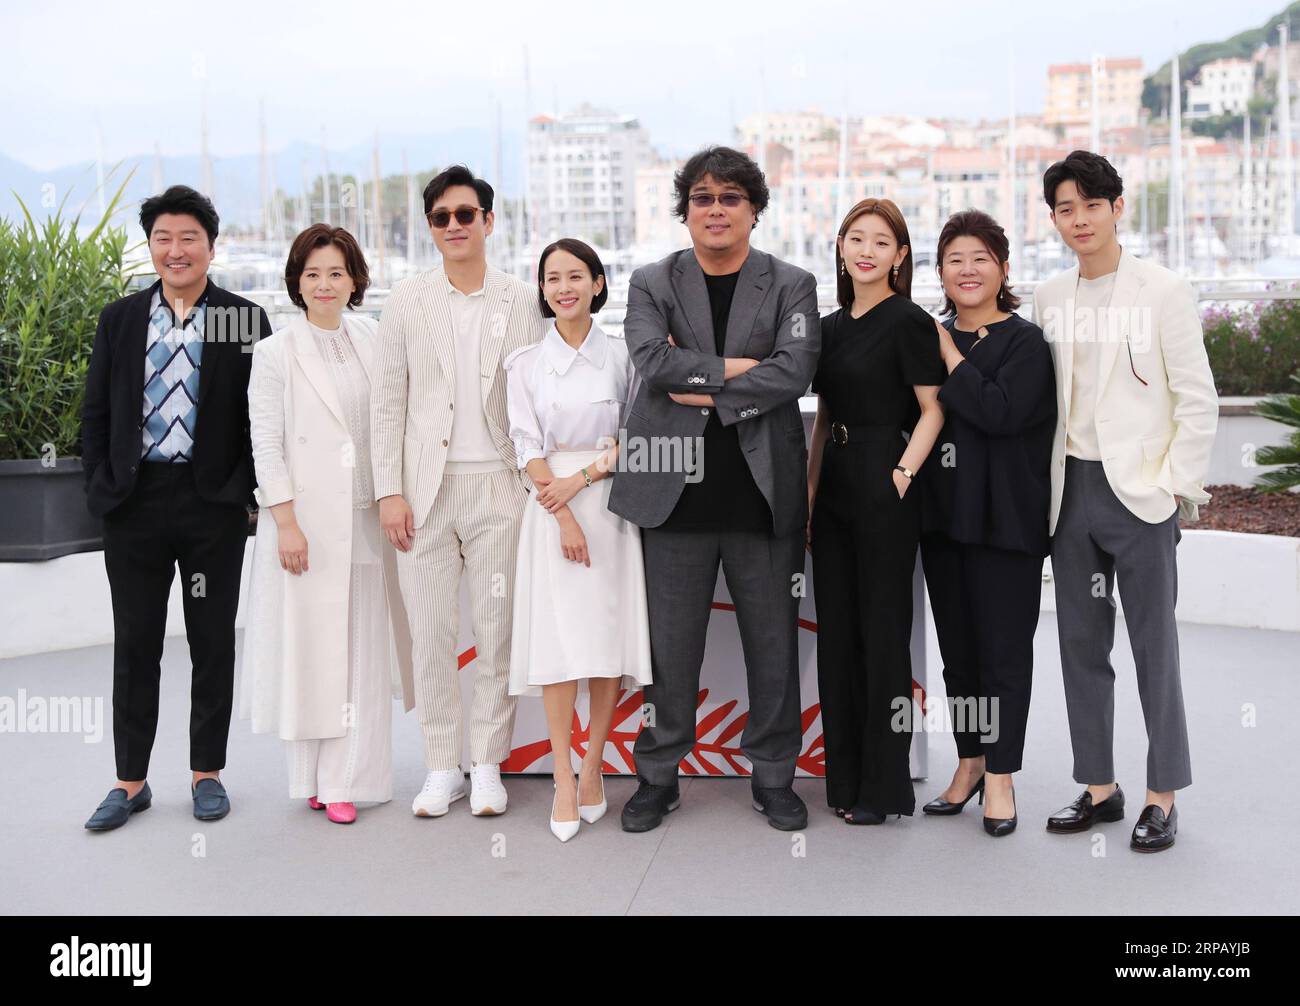 190522 -- CANNES, 22. Mai 2019 Xinhua -- Darsteller von Parasiten posieren während eines Fotogesprächs beim 72. Cannes Film Festival in Cannes, Frankreich, 22. Mai 2019. Parasit wird um die Palme d oder mit 20 anderen Filmen konkurrieren. Xinhua/Gao Jing FRANCE-CANNES-FILM FESTIVAL-PHOTOCALL-PARASIT PUBLICATIONxNOTxINxCHN Stockfoto